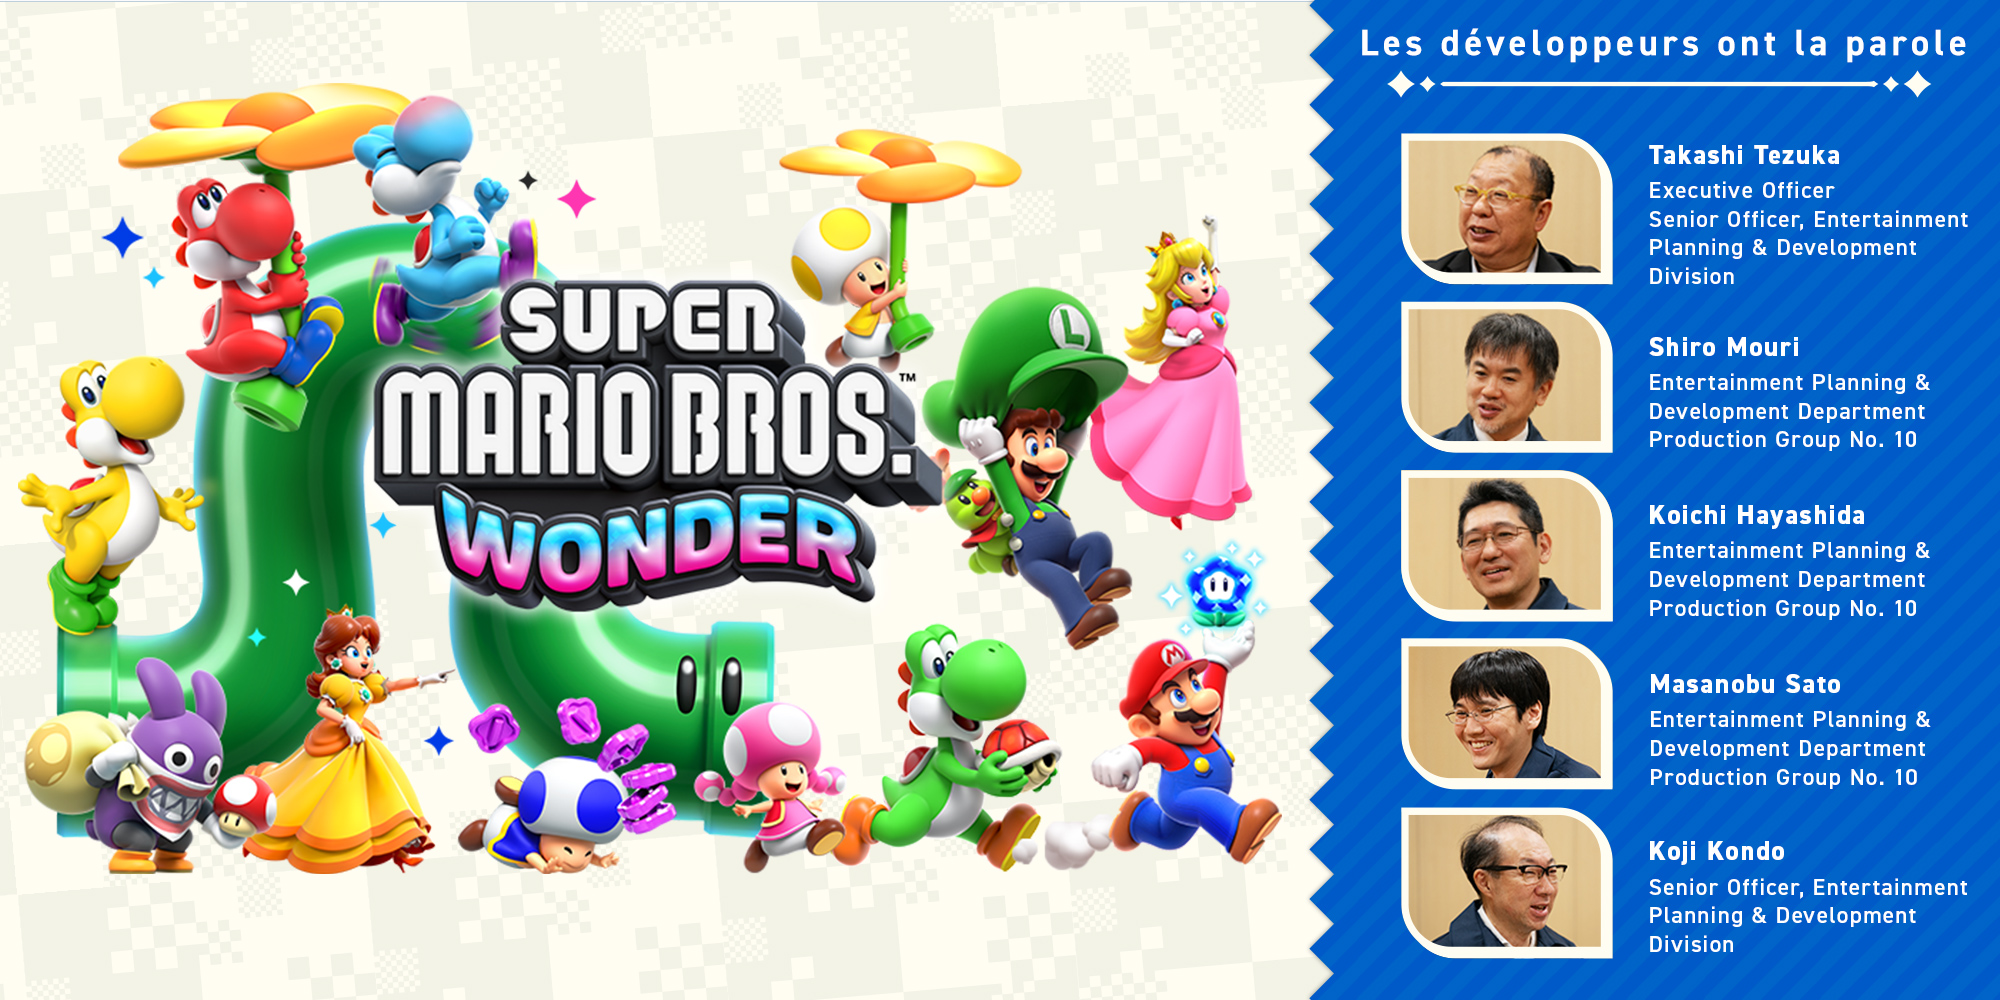 Les développeurs ont la parole, Vol. 11 : Super Mario Bros. Wonder – Chapitre 4